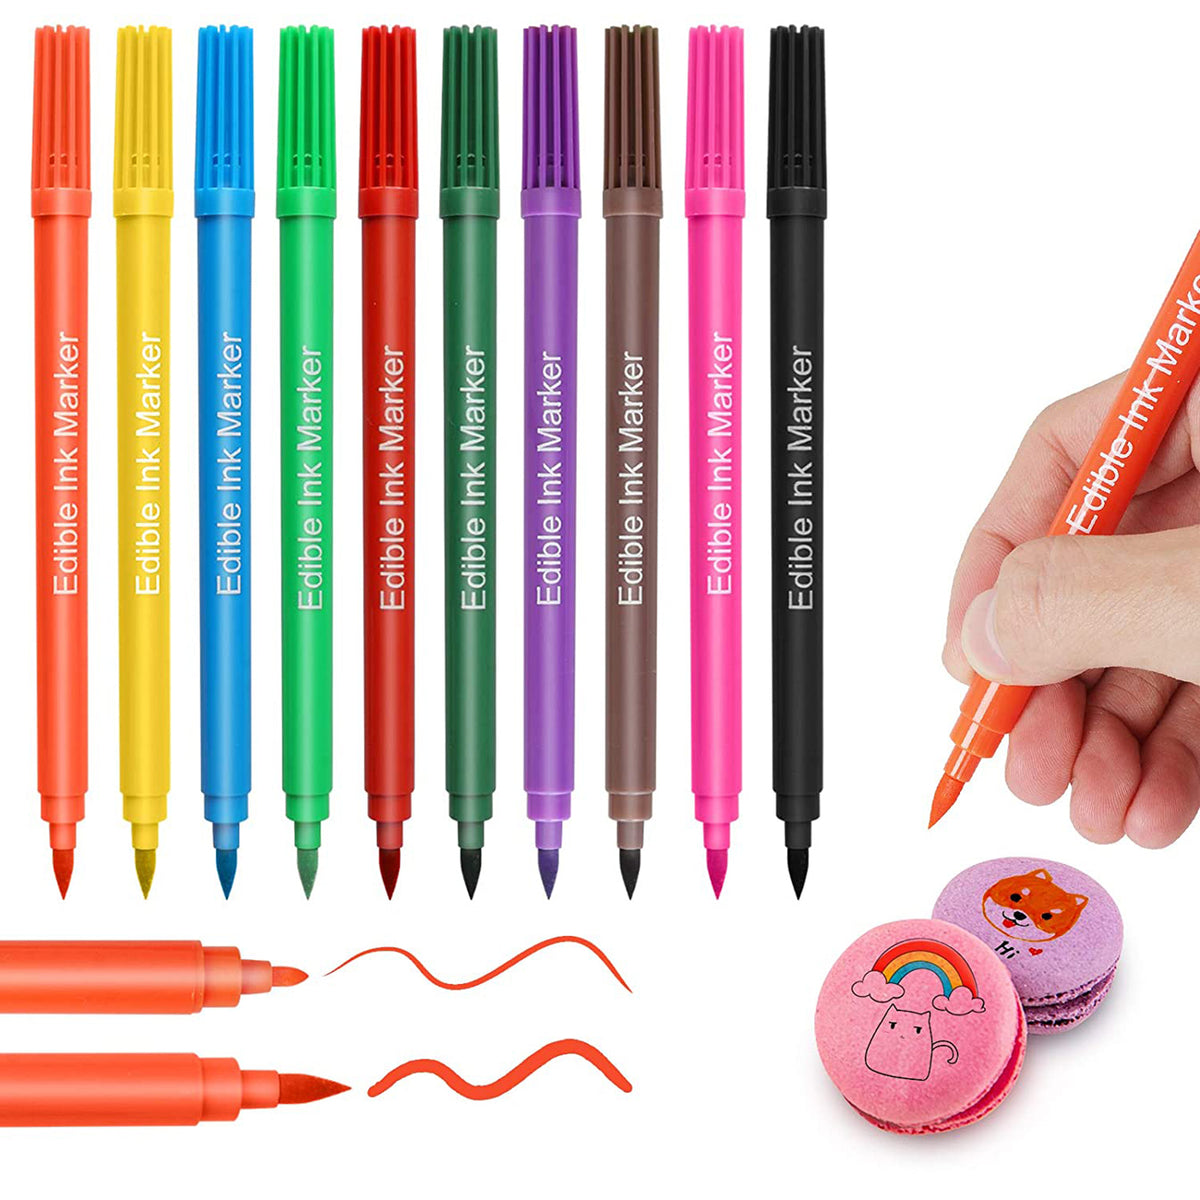 Food coloring pencil set